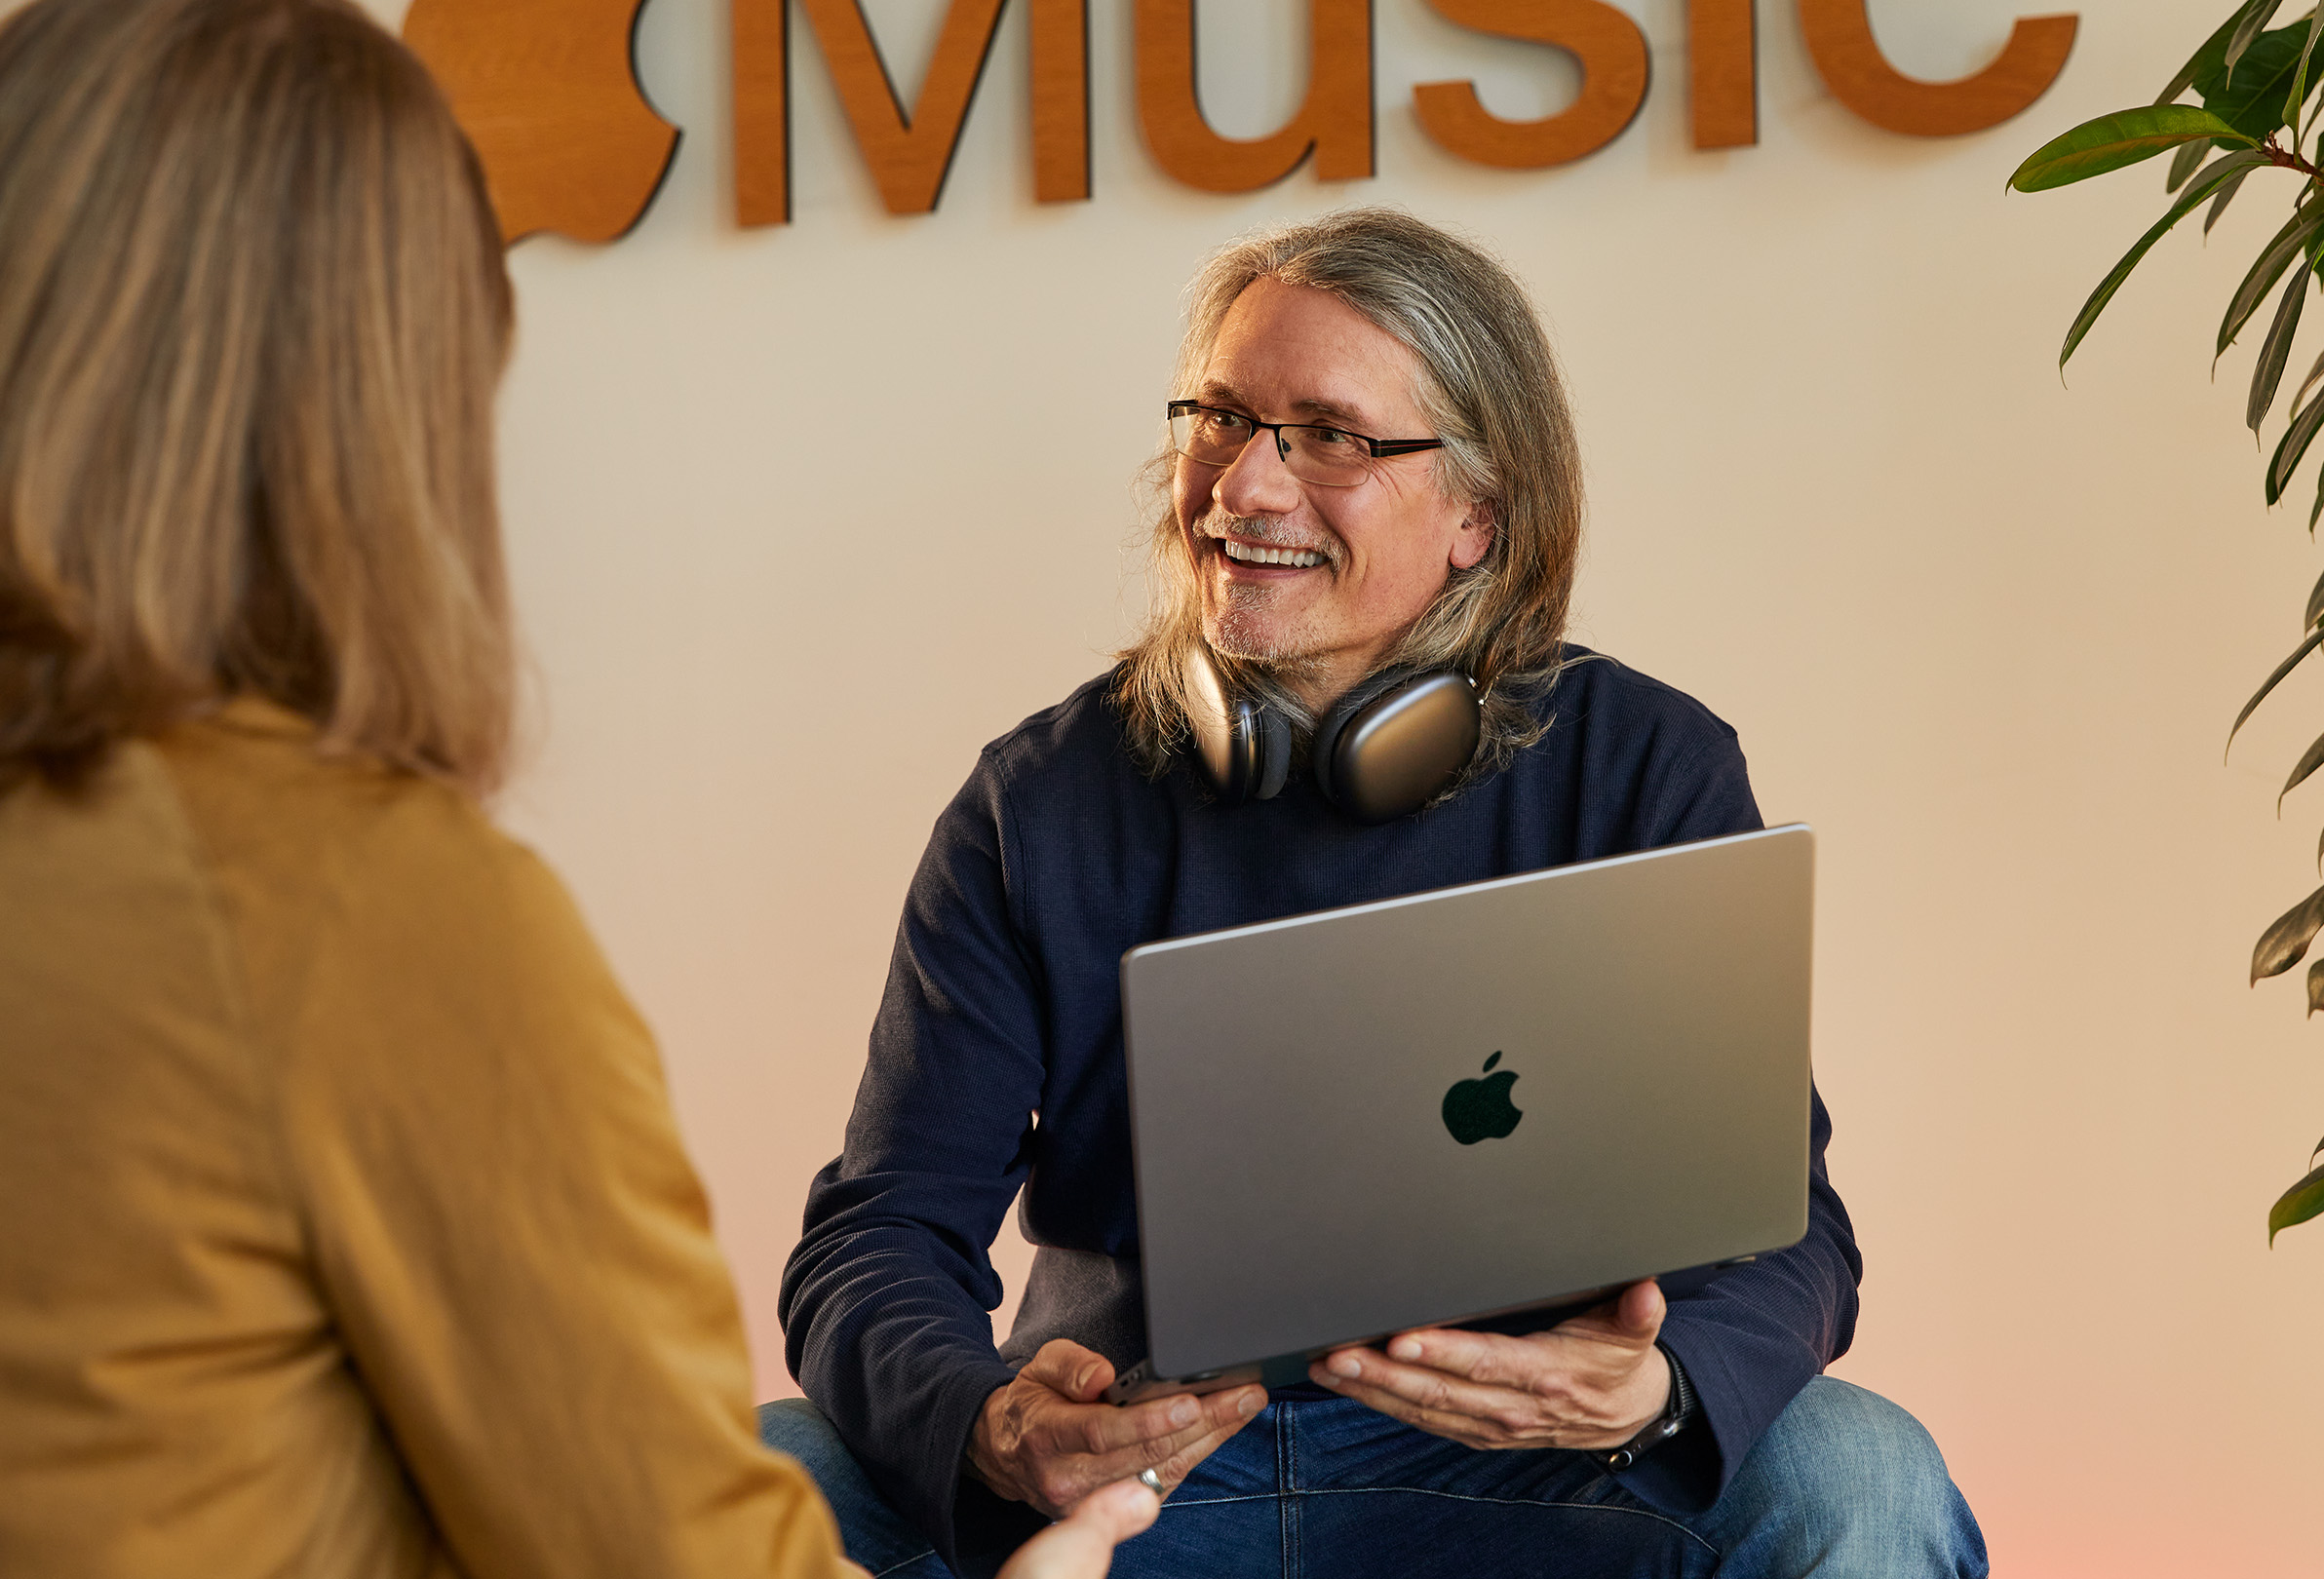 Két Apple-alkalmazott beszélget, az egyik MacBookot tart a kezében és egy Apple Music logót ábrázoló fal előtt ül.